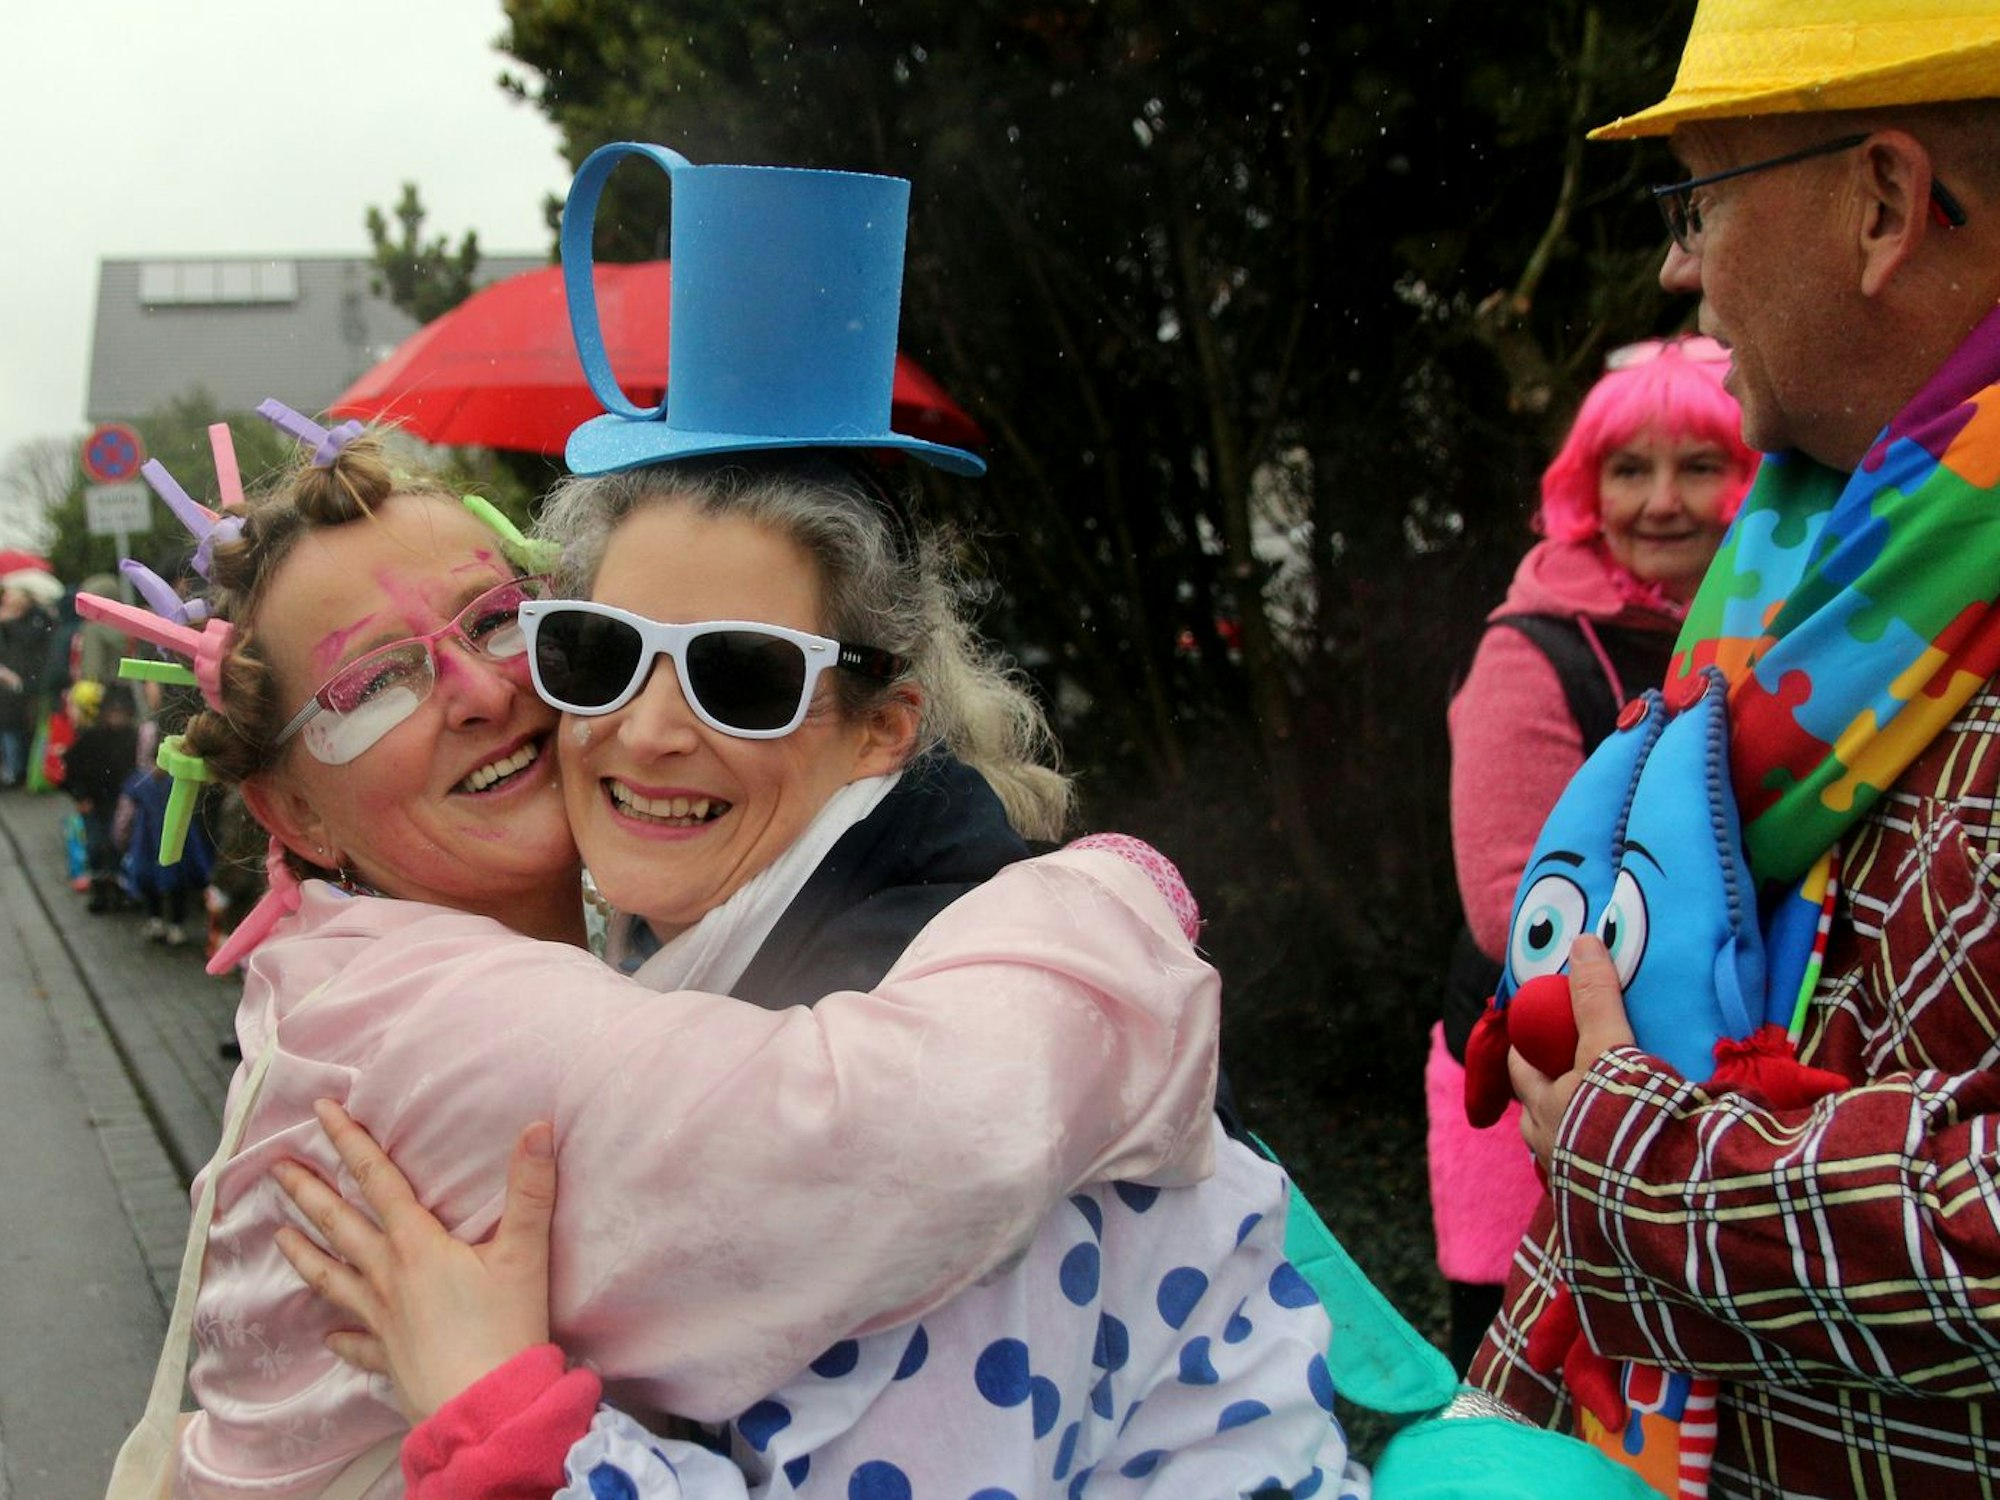 Karnevalisten feiern mit Freude beim Karnevalszug in Dansweiler.